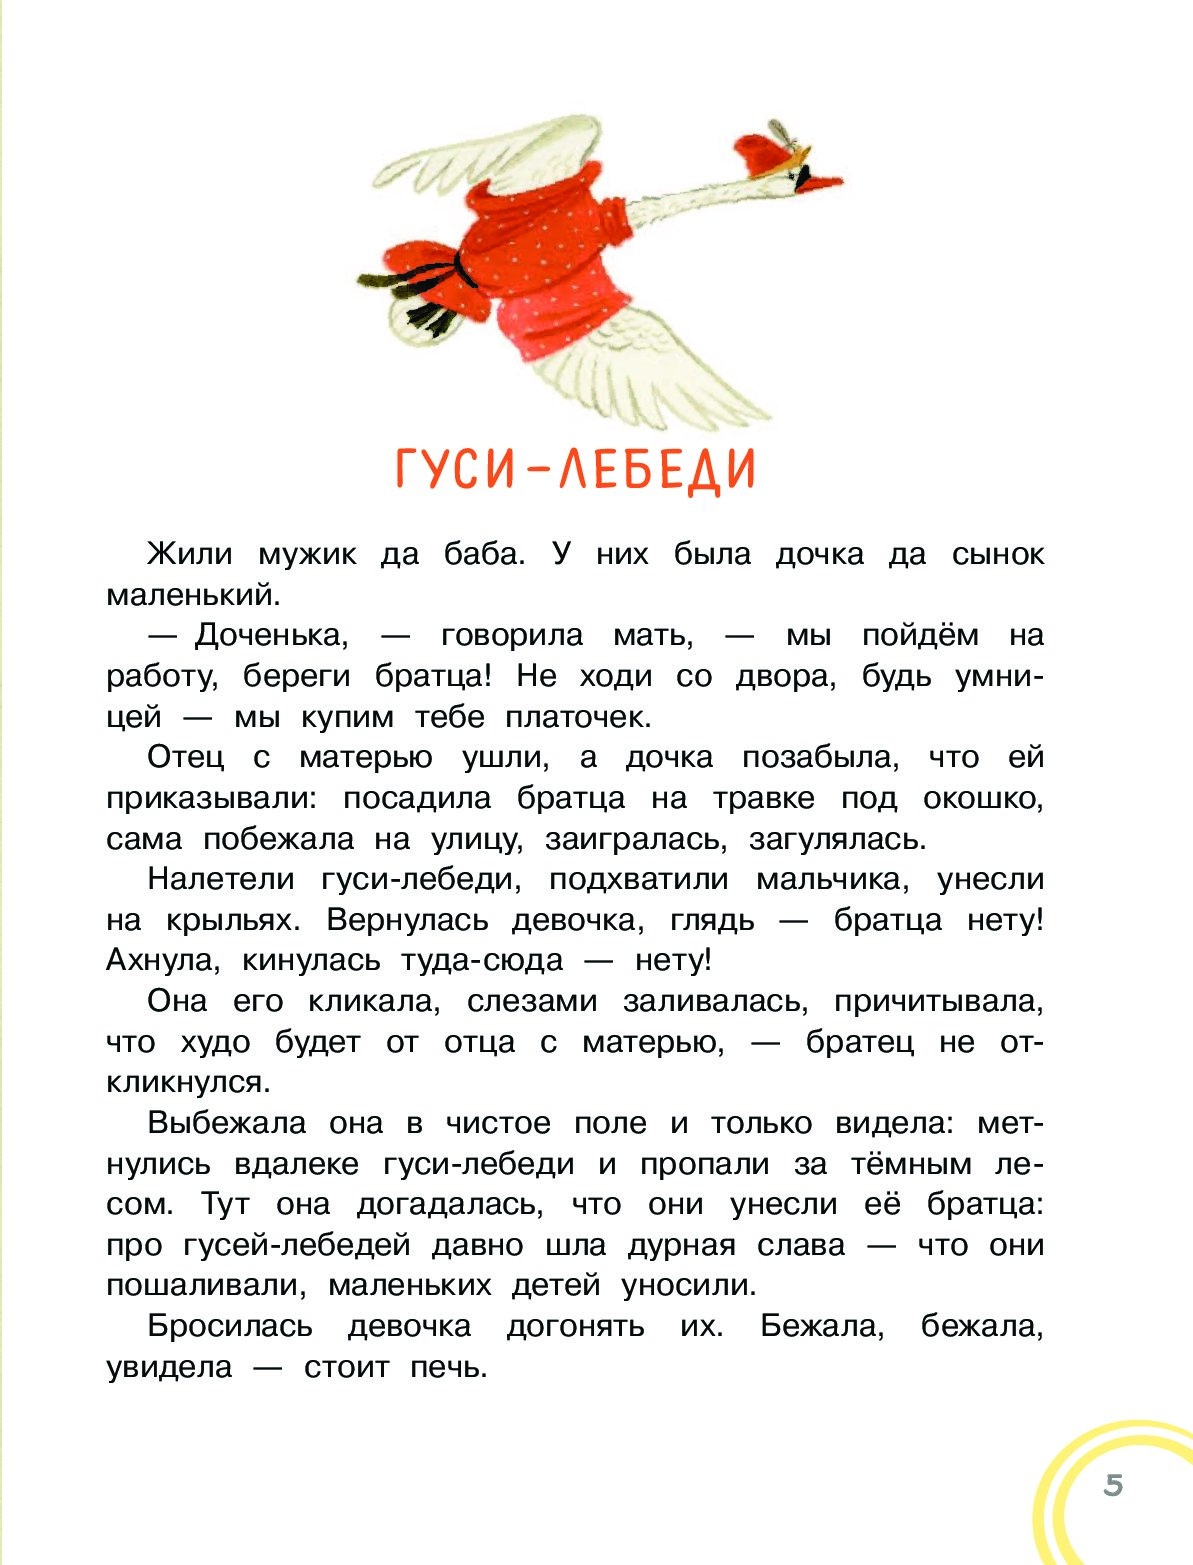 Гуси-лебеди. русская народная сказка. читать онлайн